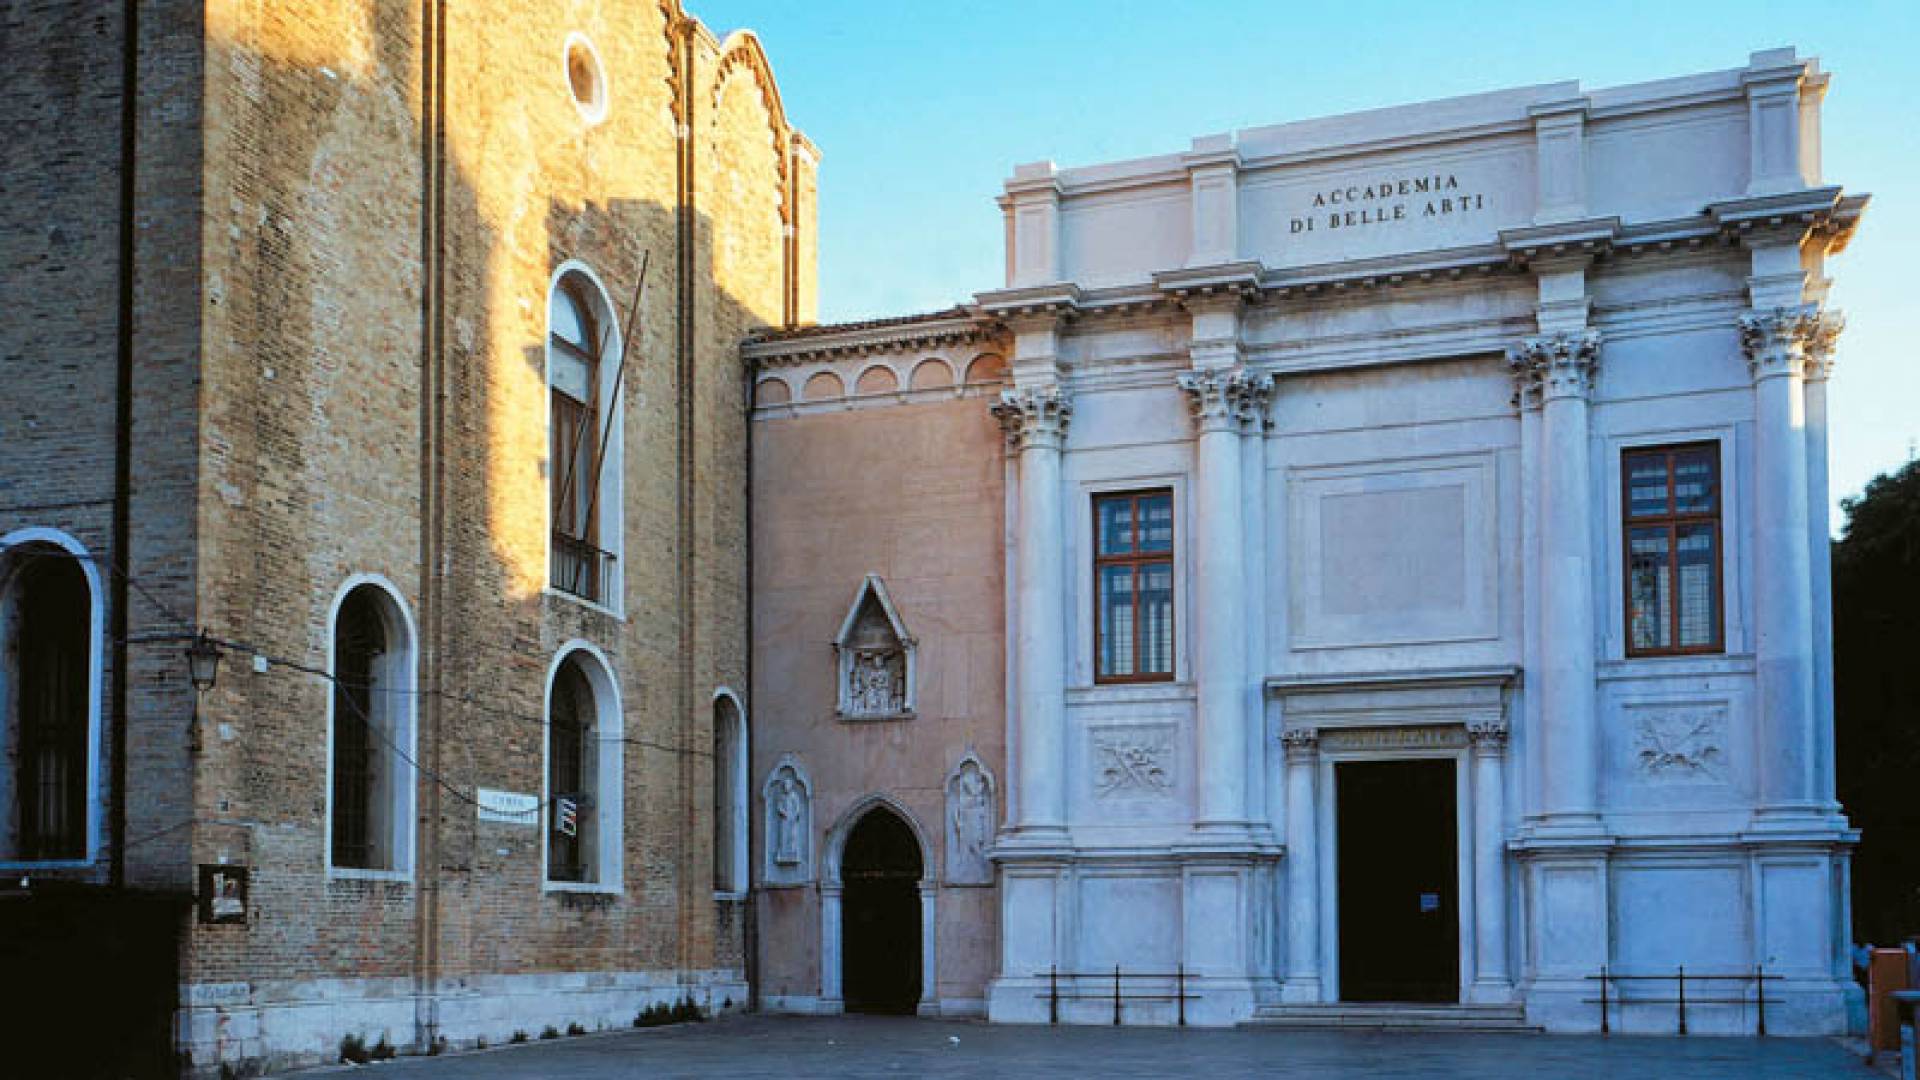 GALLERIE DELL'ACCADEMIA, Scuola Della Carita'